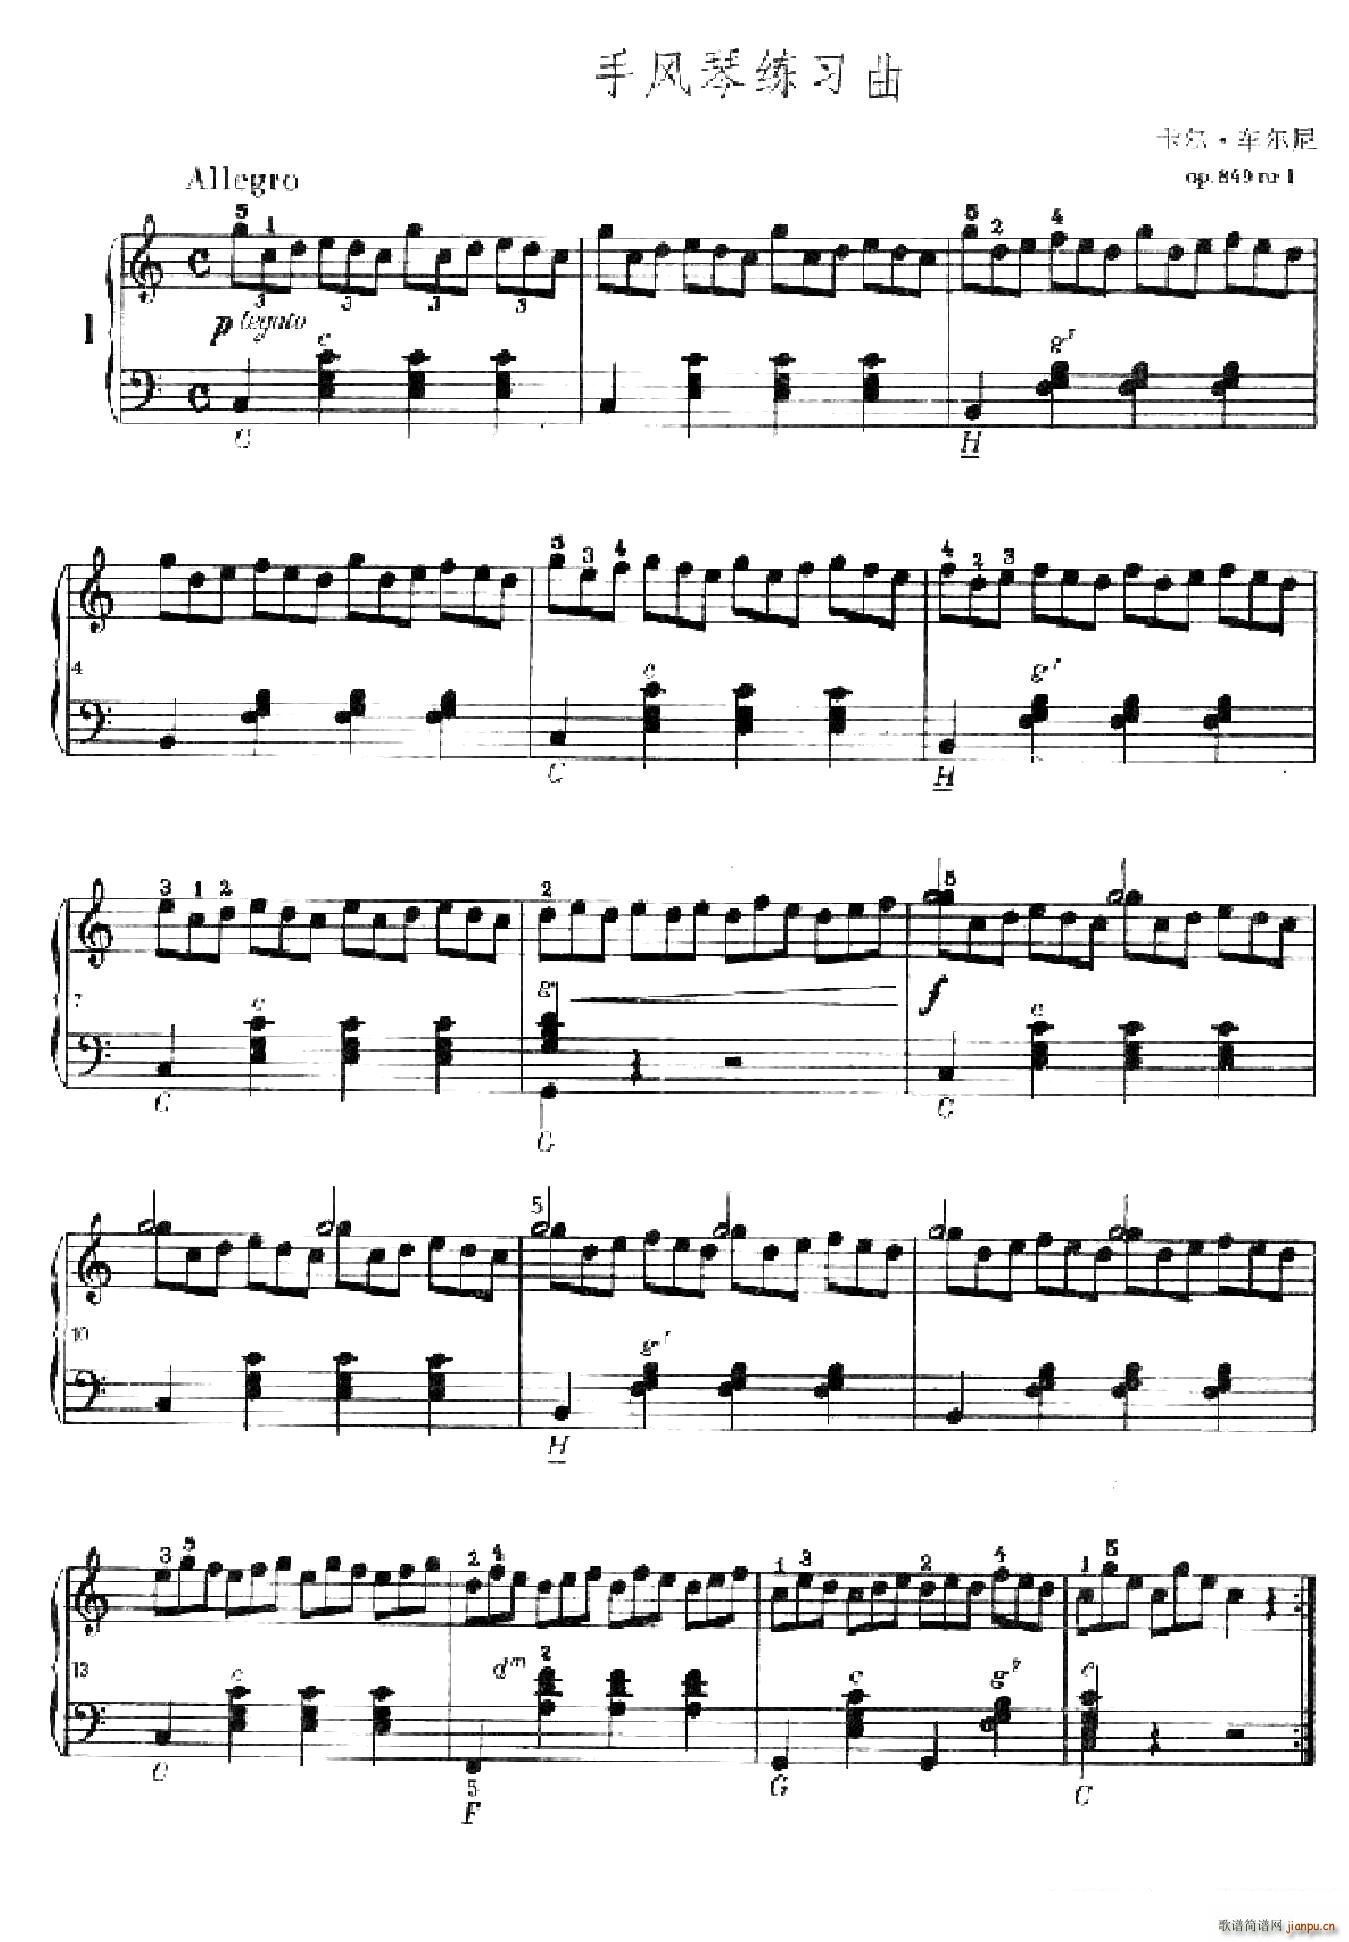 车尔尼手风琴练习曲集 第Ⅱ册 第1 4首(手风琴谱)1